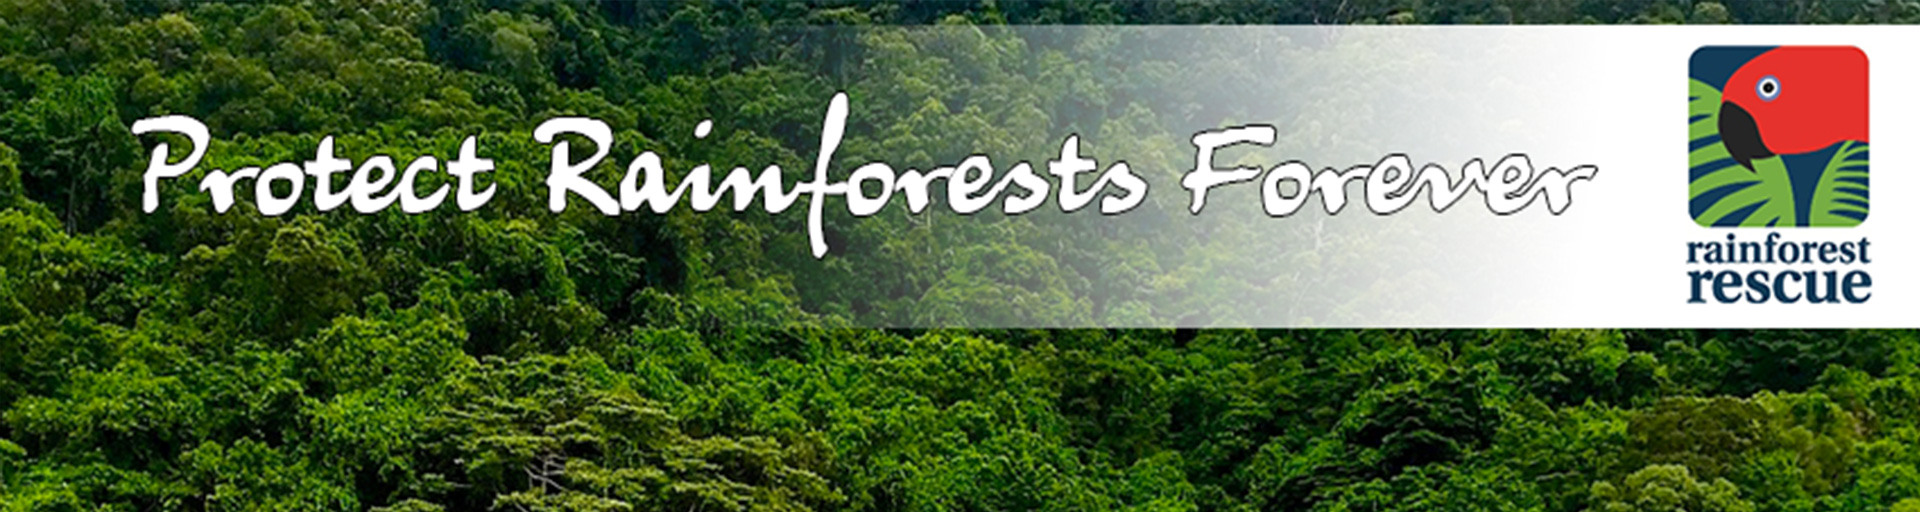 Rainforest Rescue Home